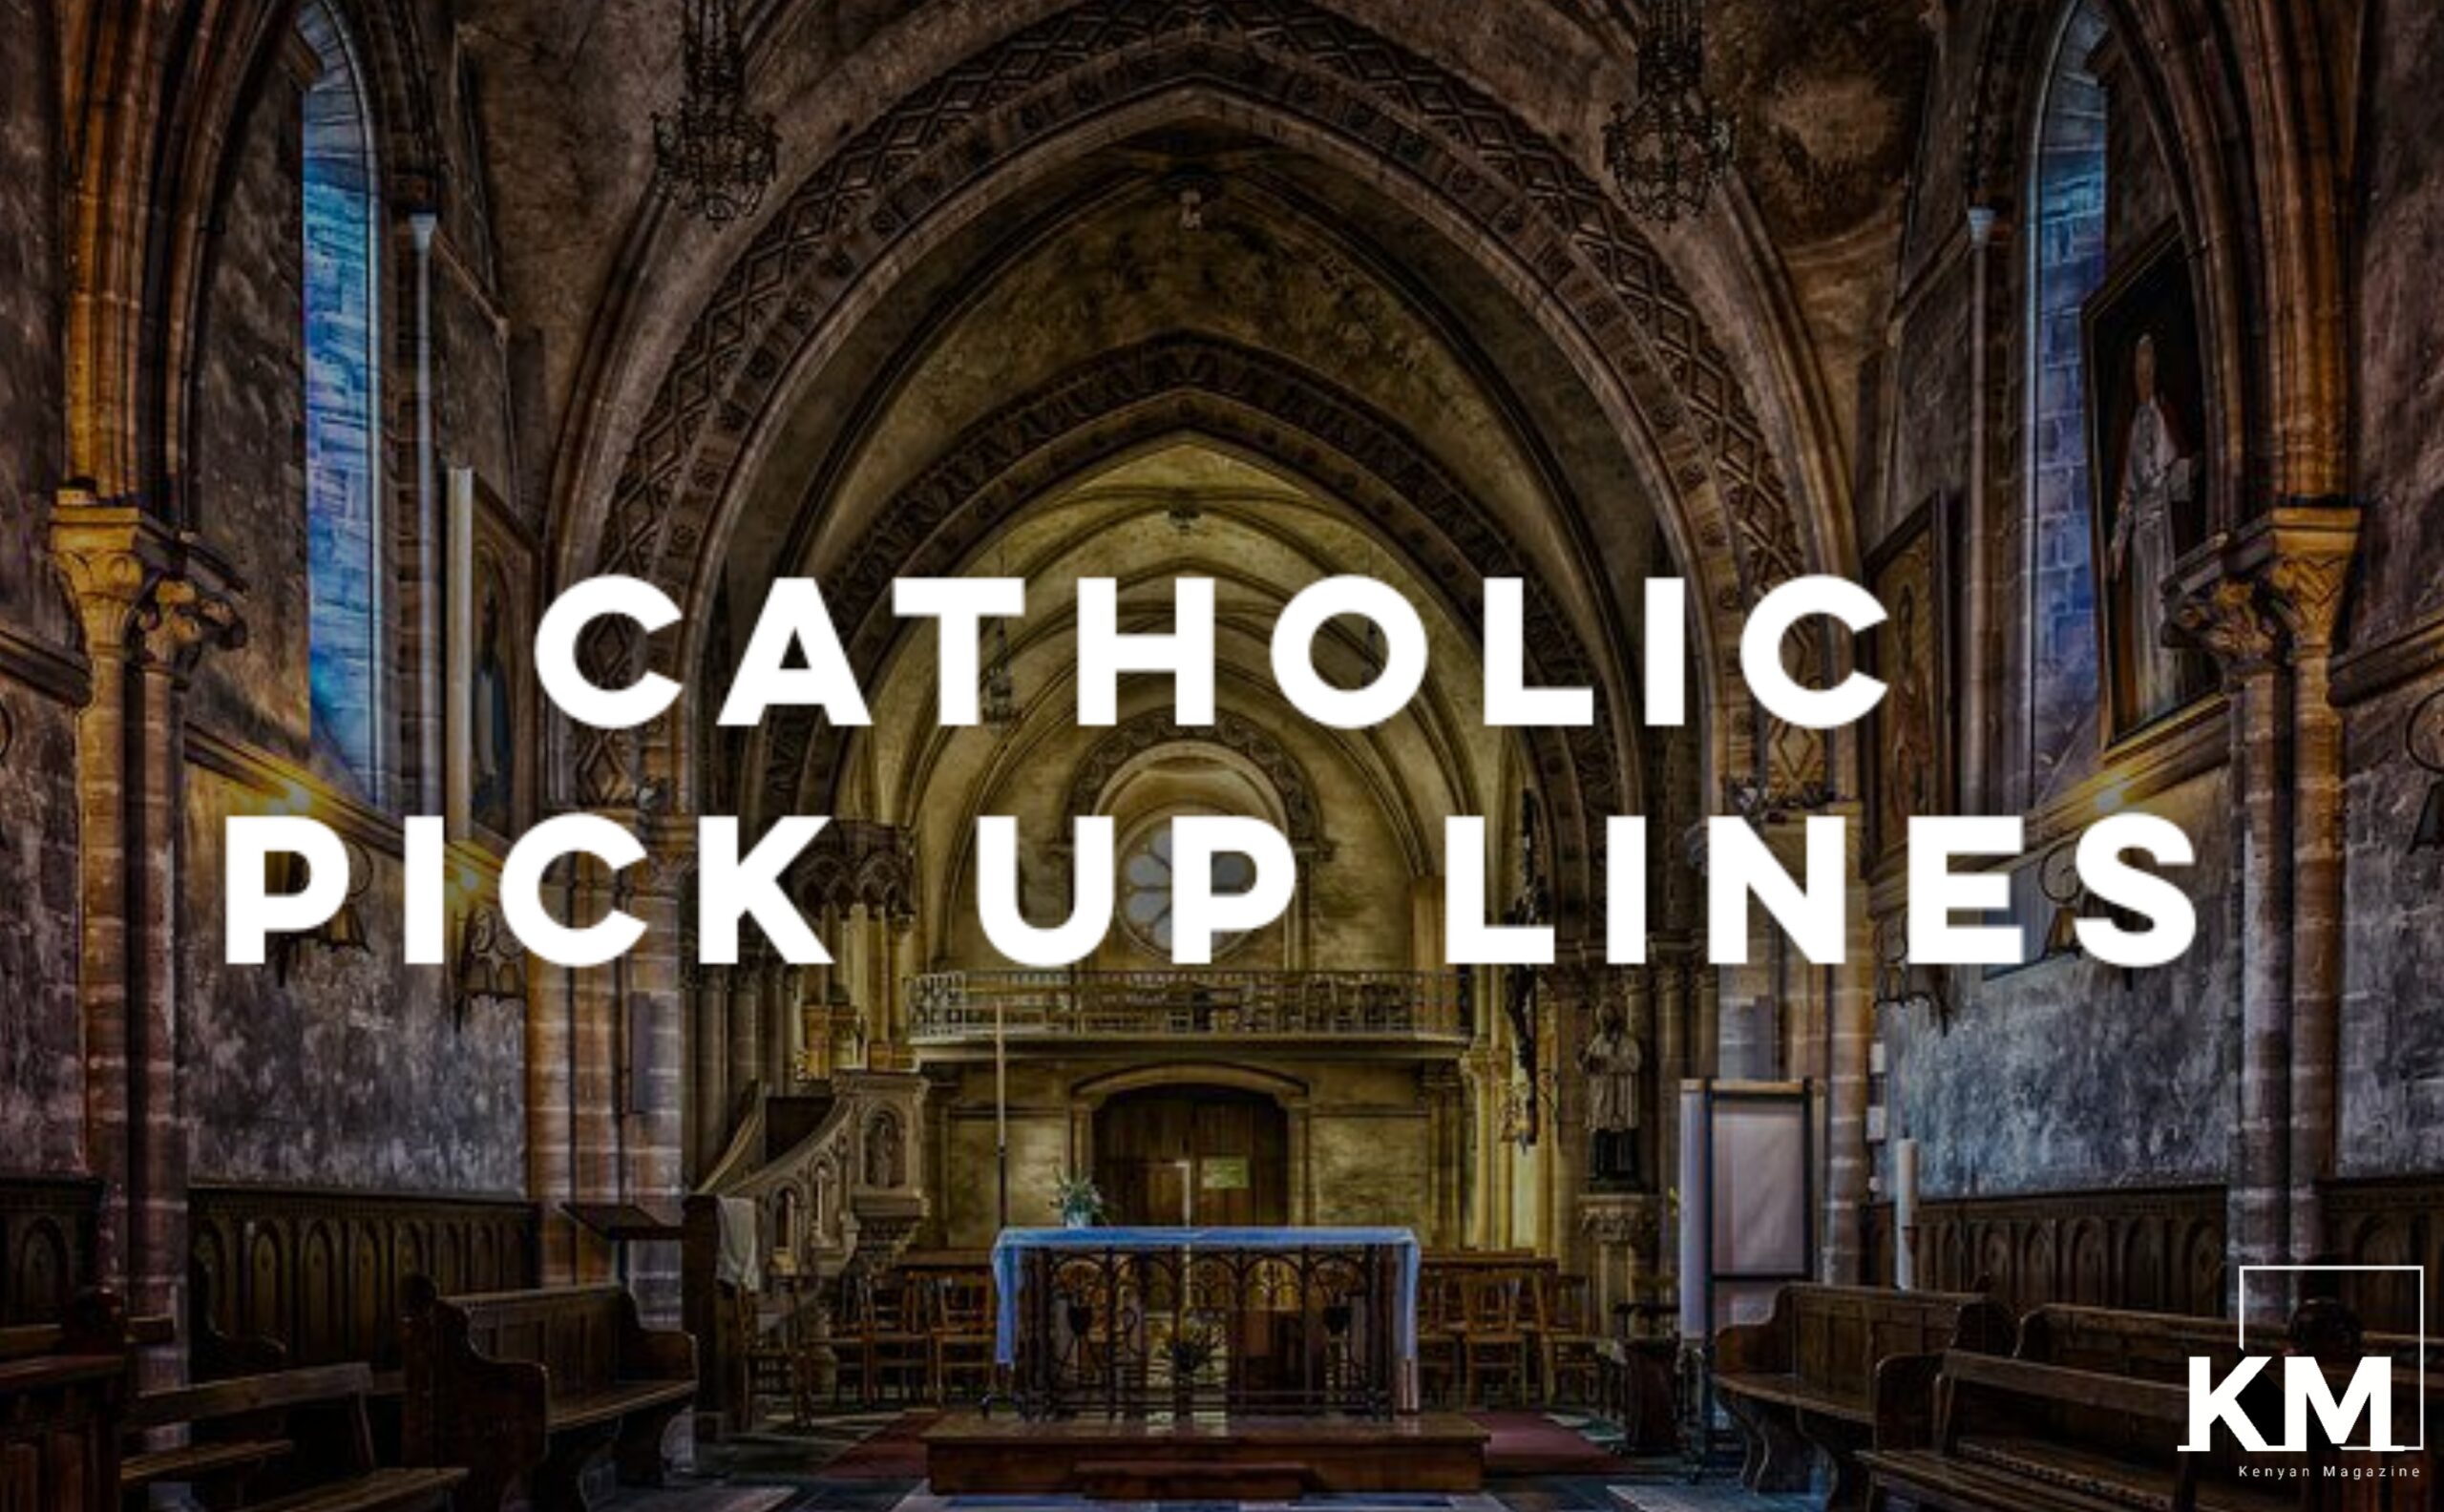 Catholic Pick up lines